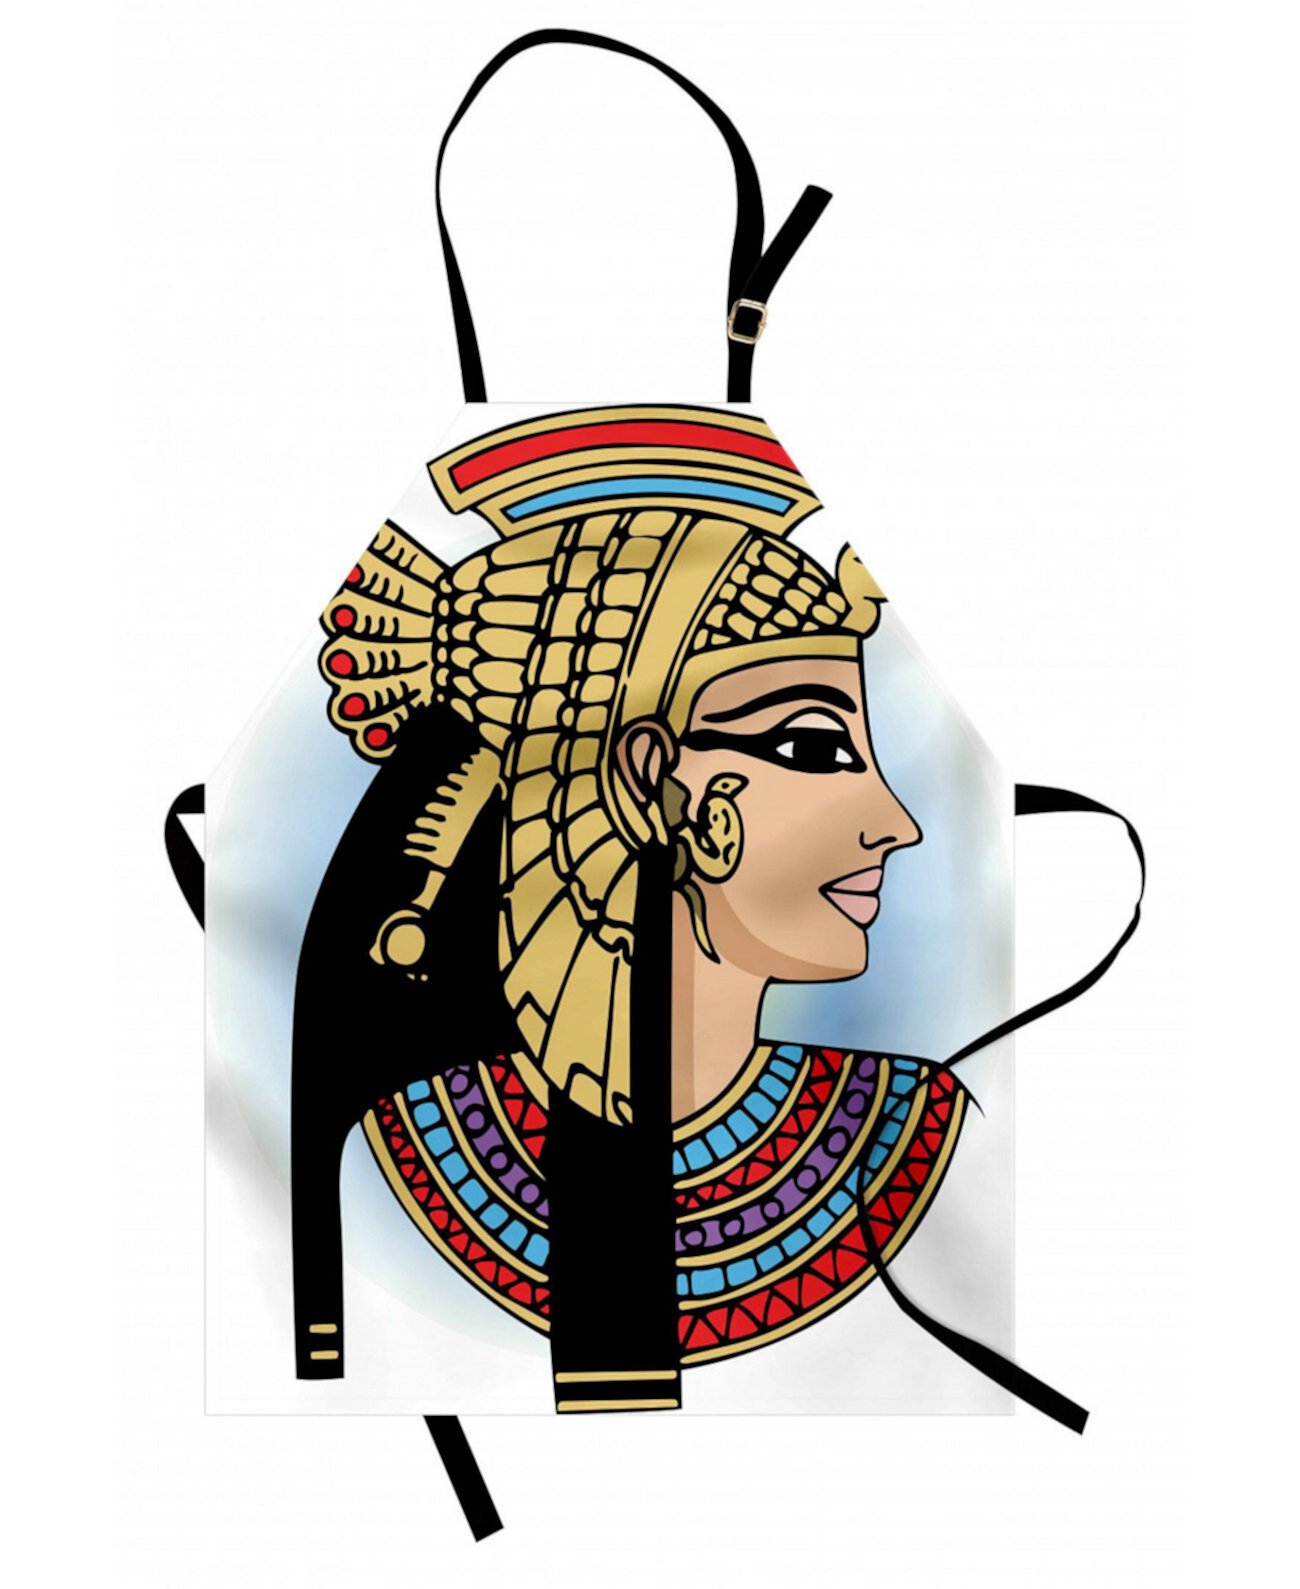 Египетский фартук у женщин фото